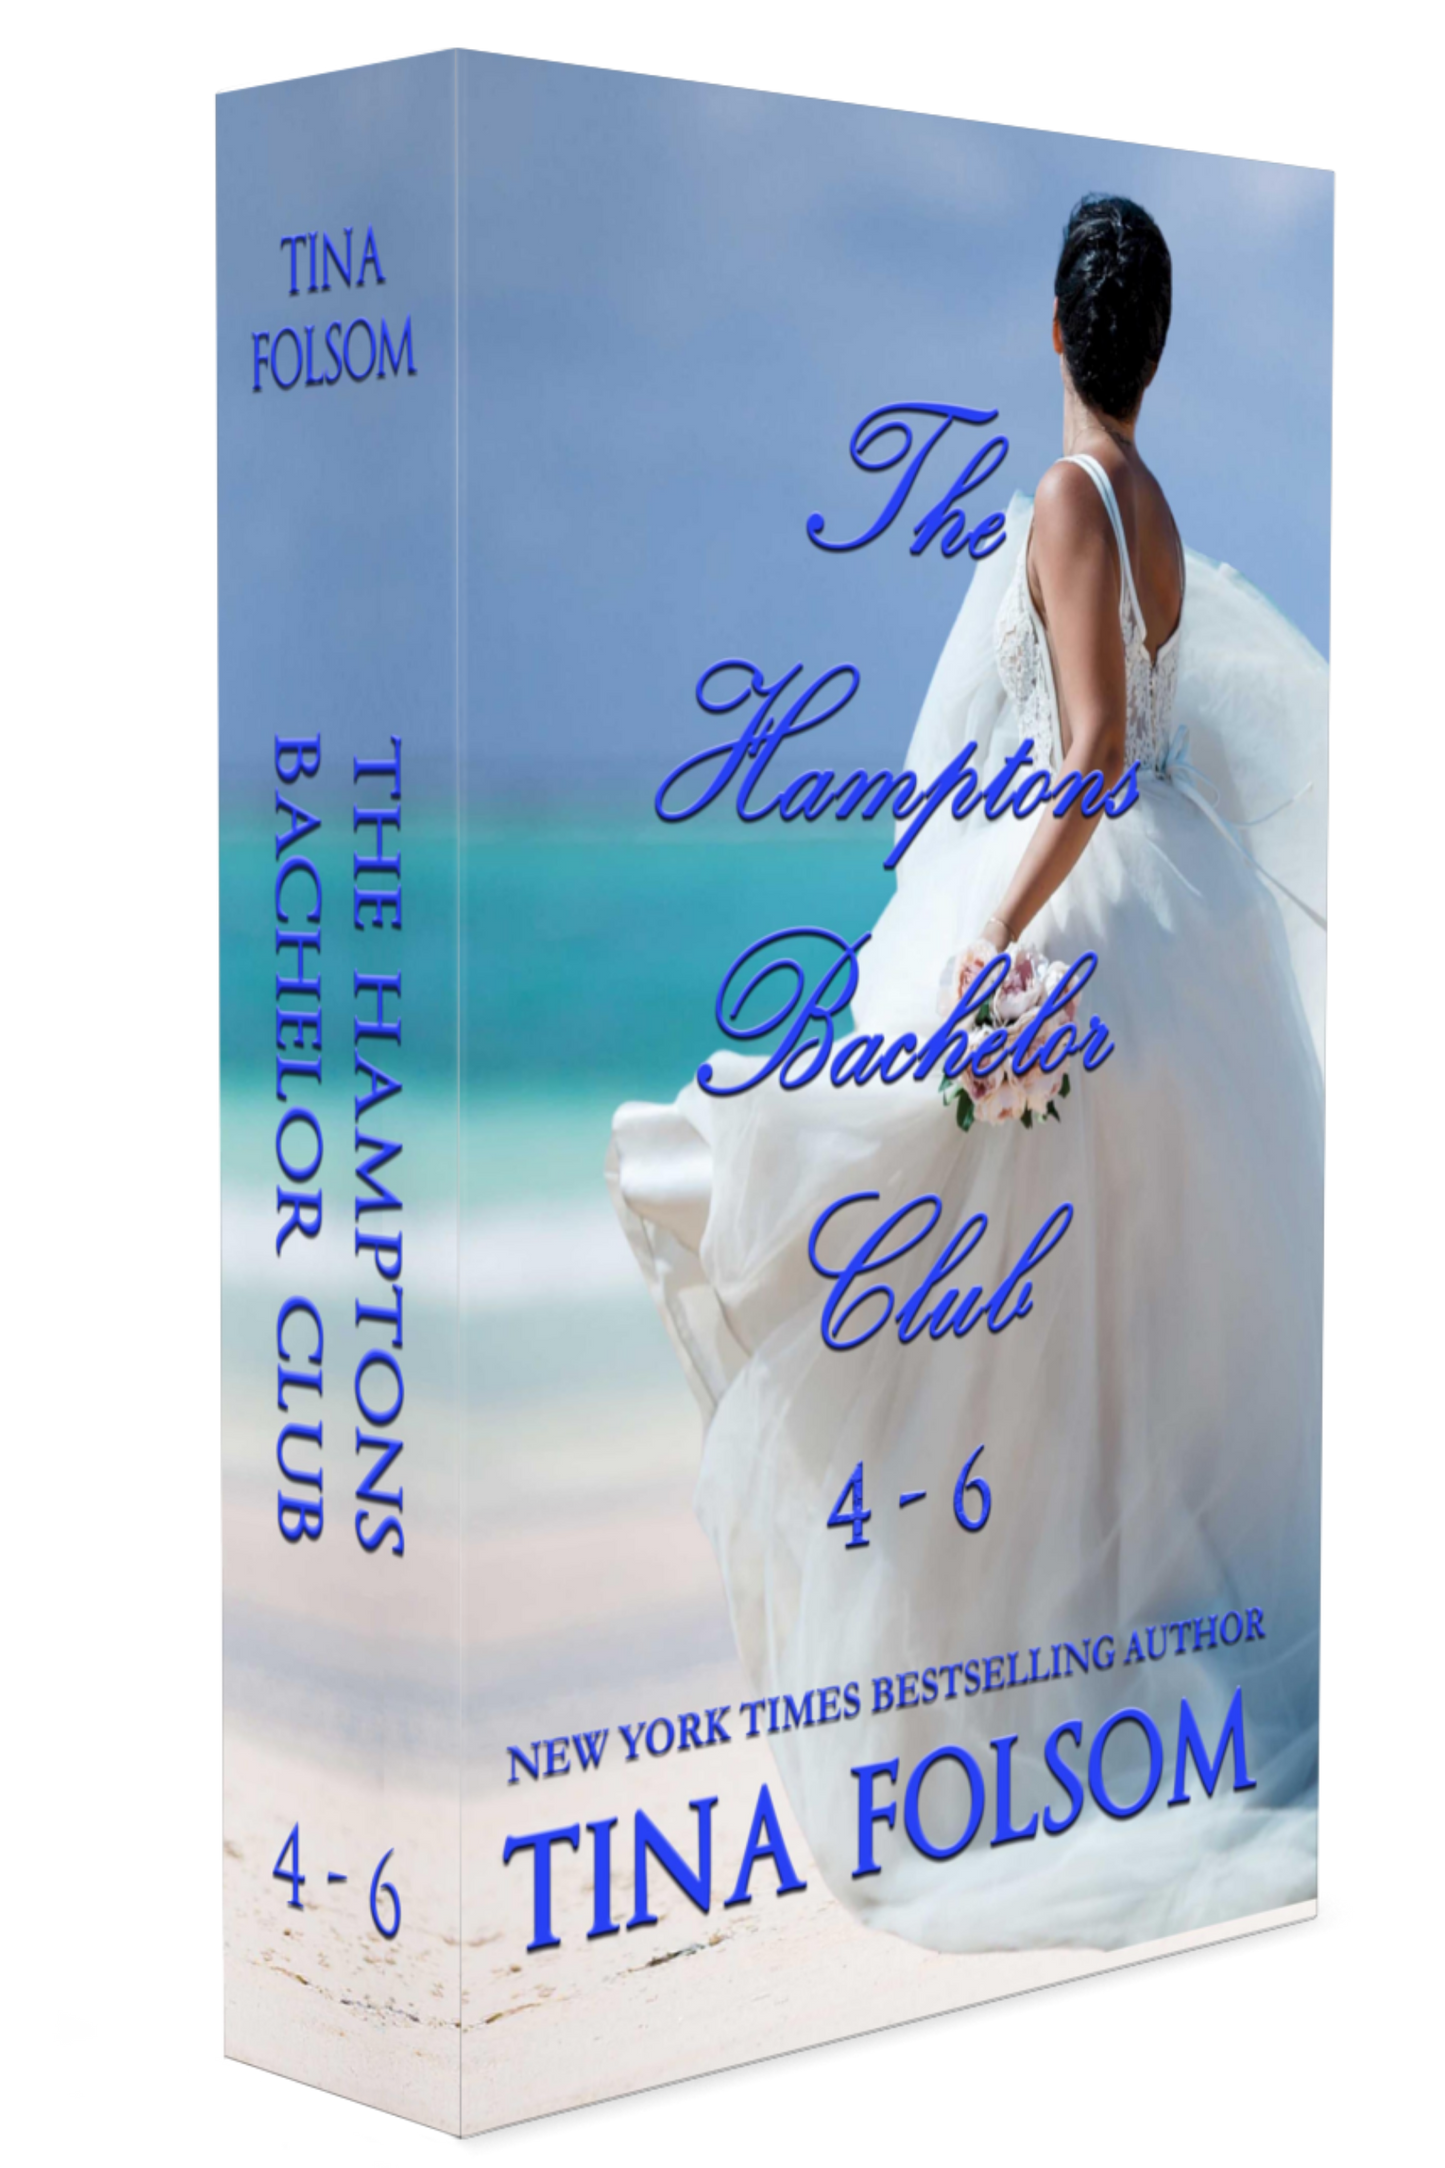 The Hamptons Bachelor Club (Book 4 - 6)